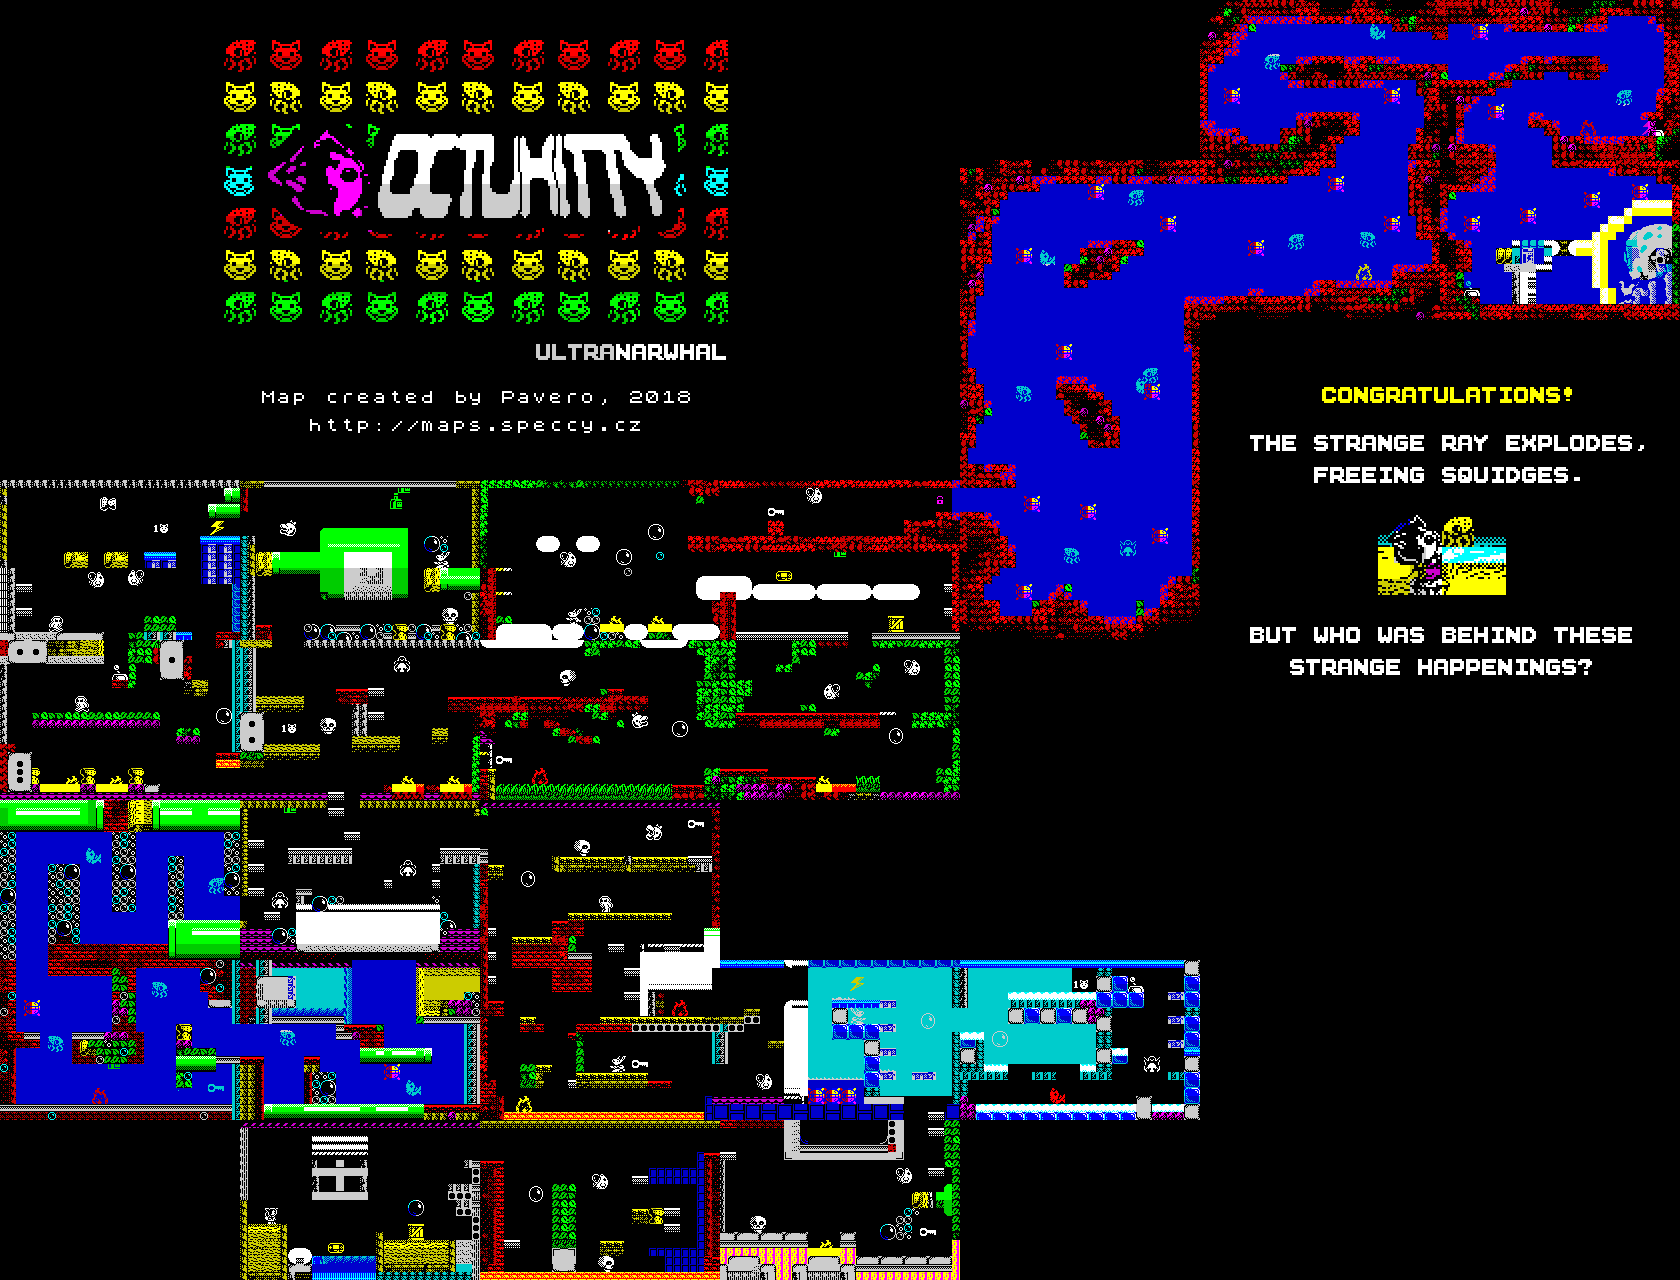 OctuKitty - The Map